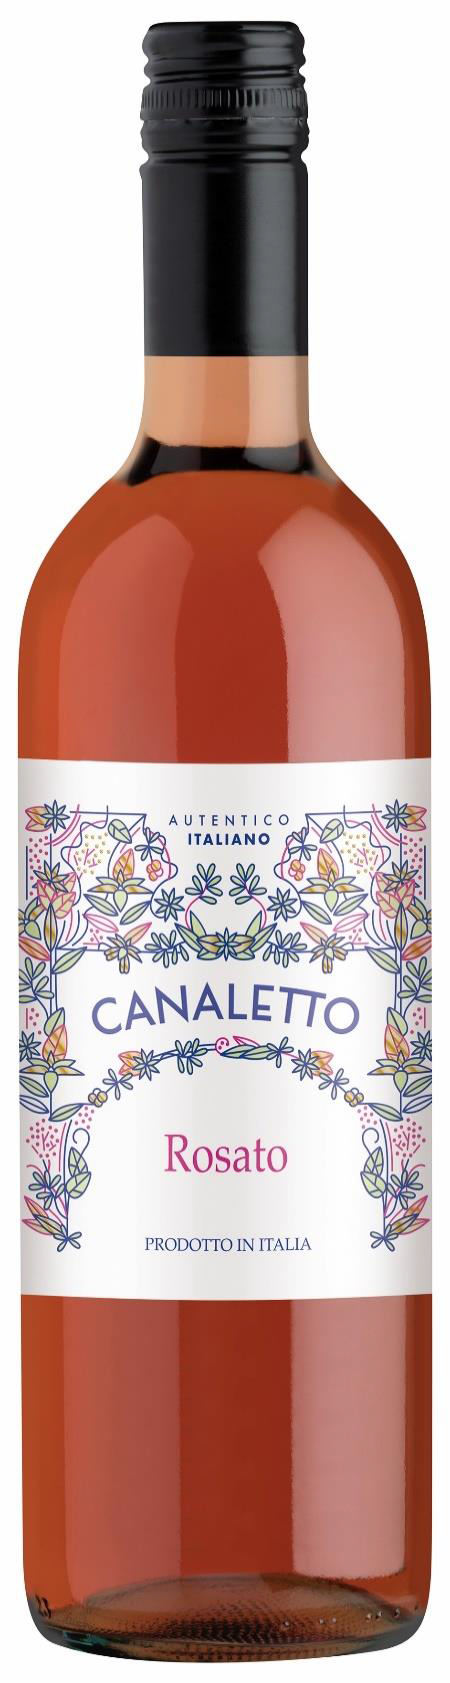 Wine Canaletto Rosato